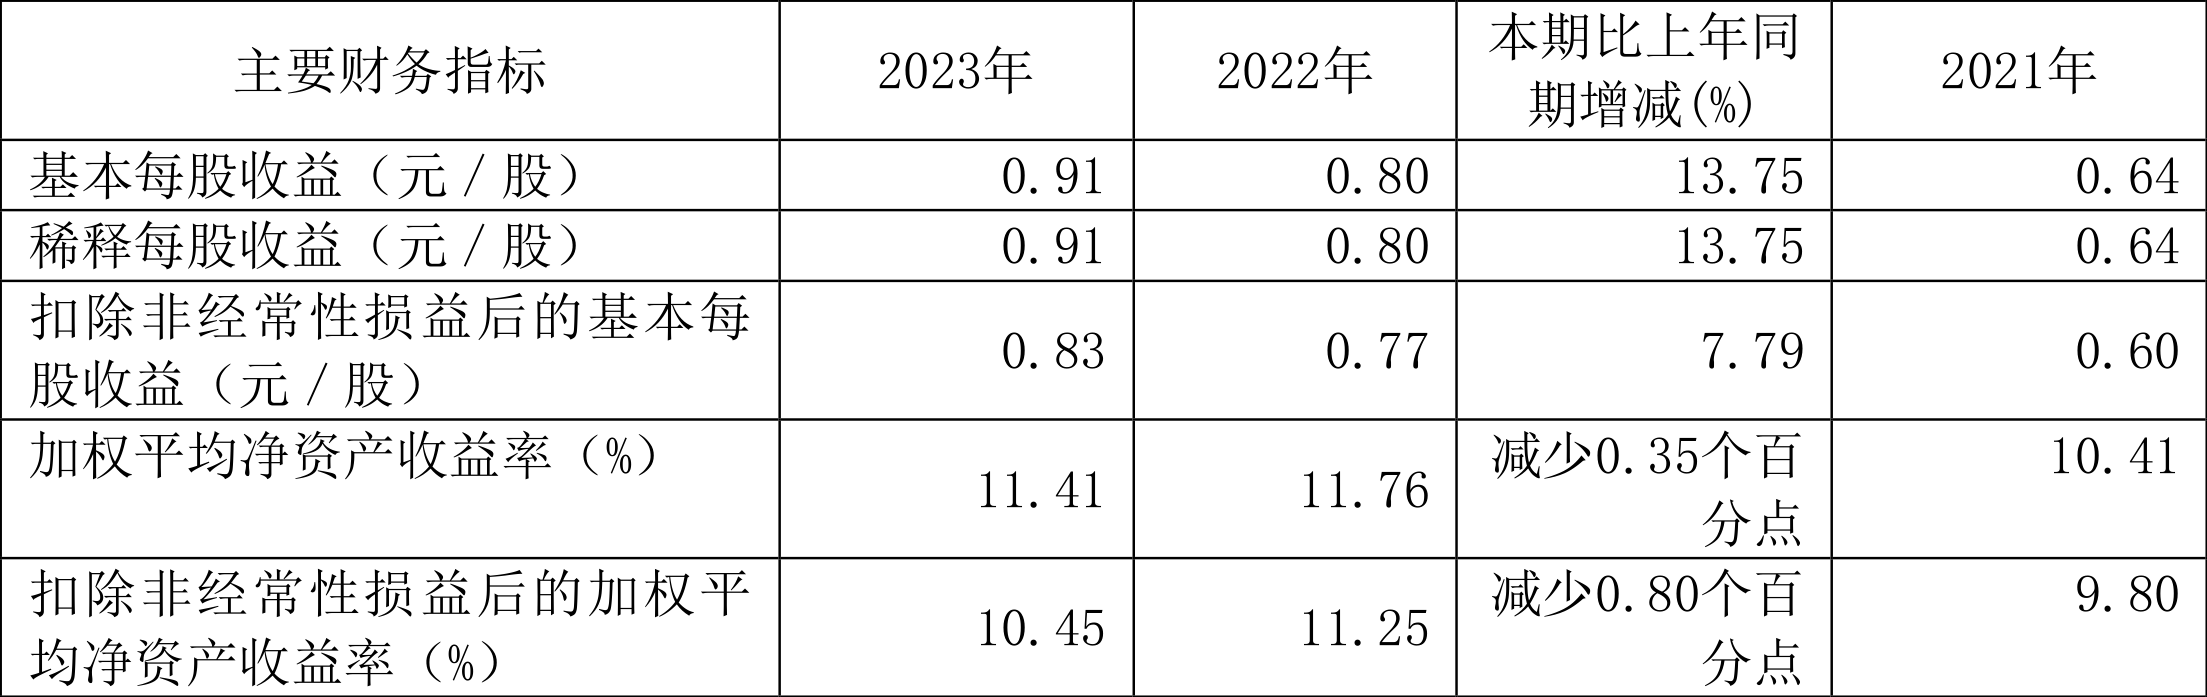 安徽建工：2023年净利15.53亿元 同比增长12.57% 拟10派2.6元